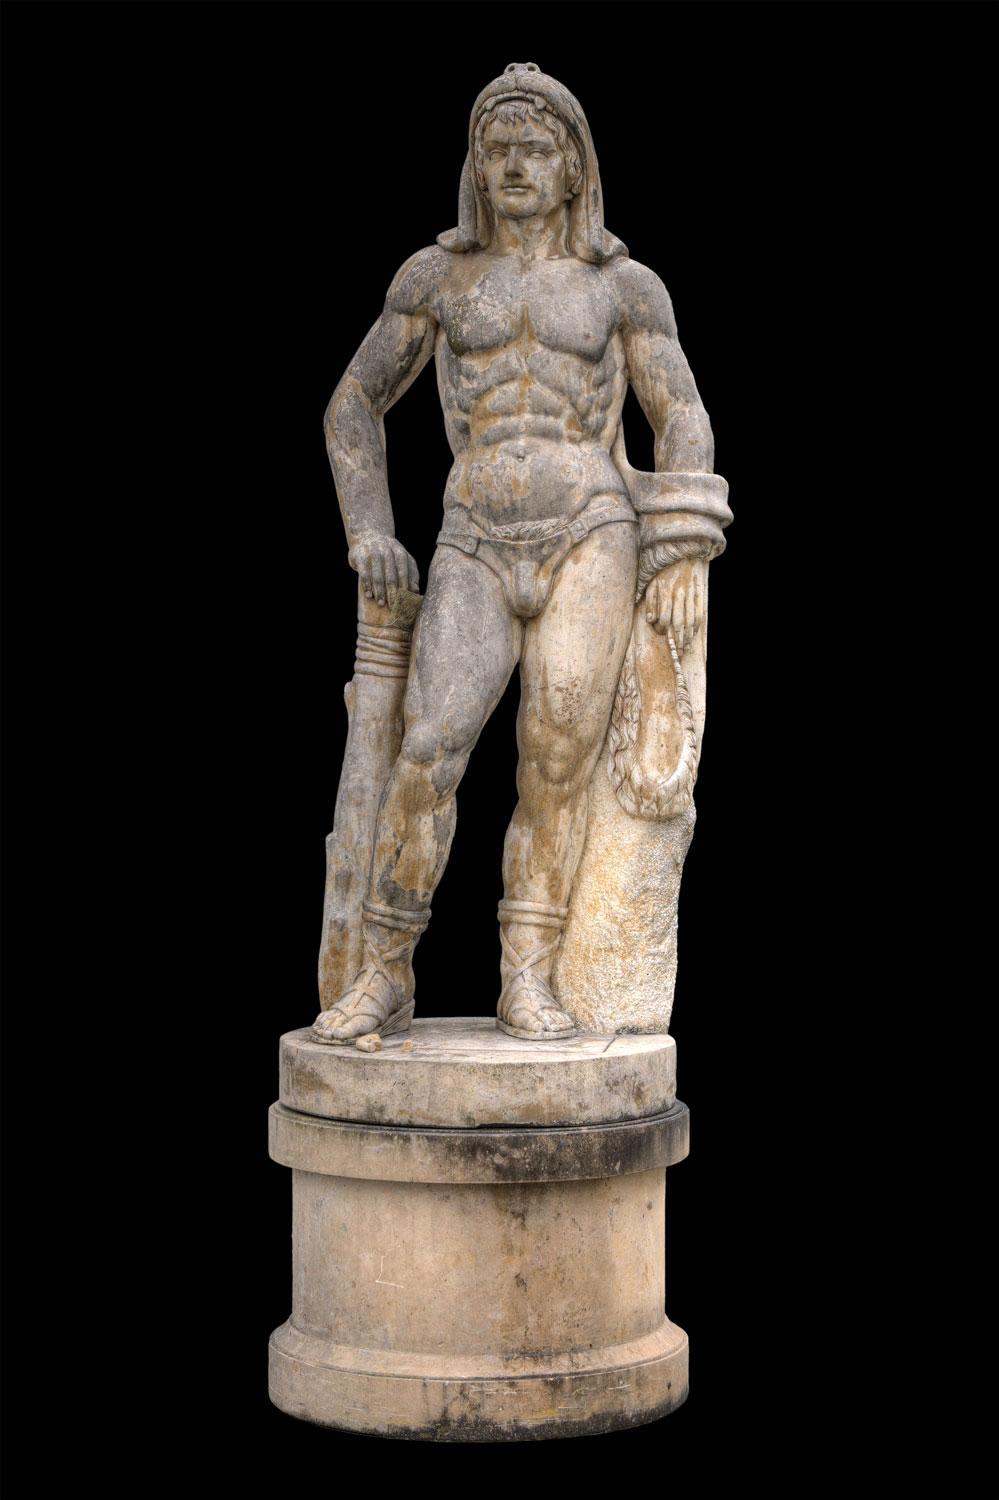  Monumentaler Marmor Italienischer Rationalist Figurativ  Aktskulpturen (Braun), Nude Sculpture, von Unknown